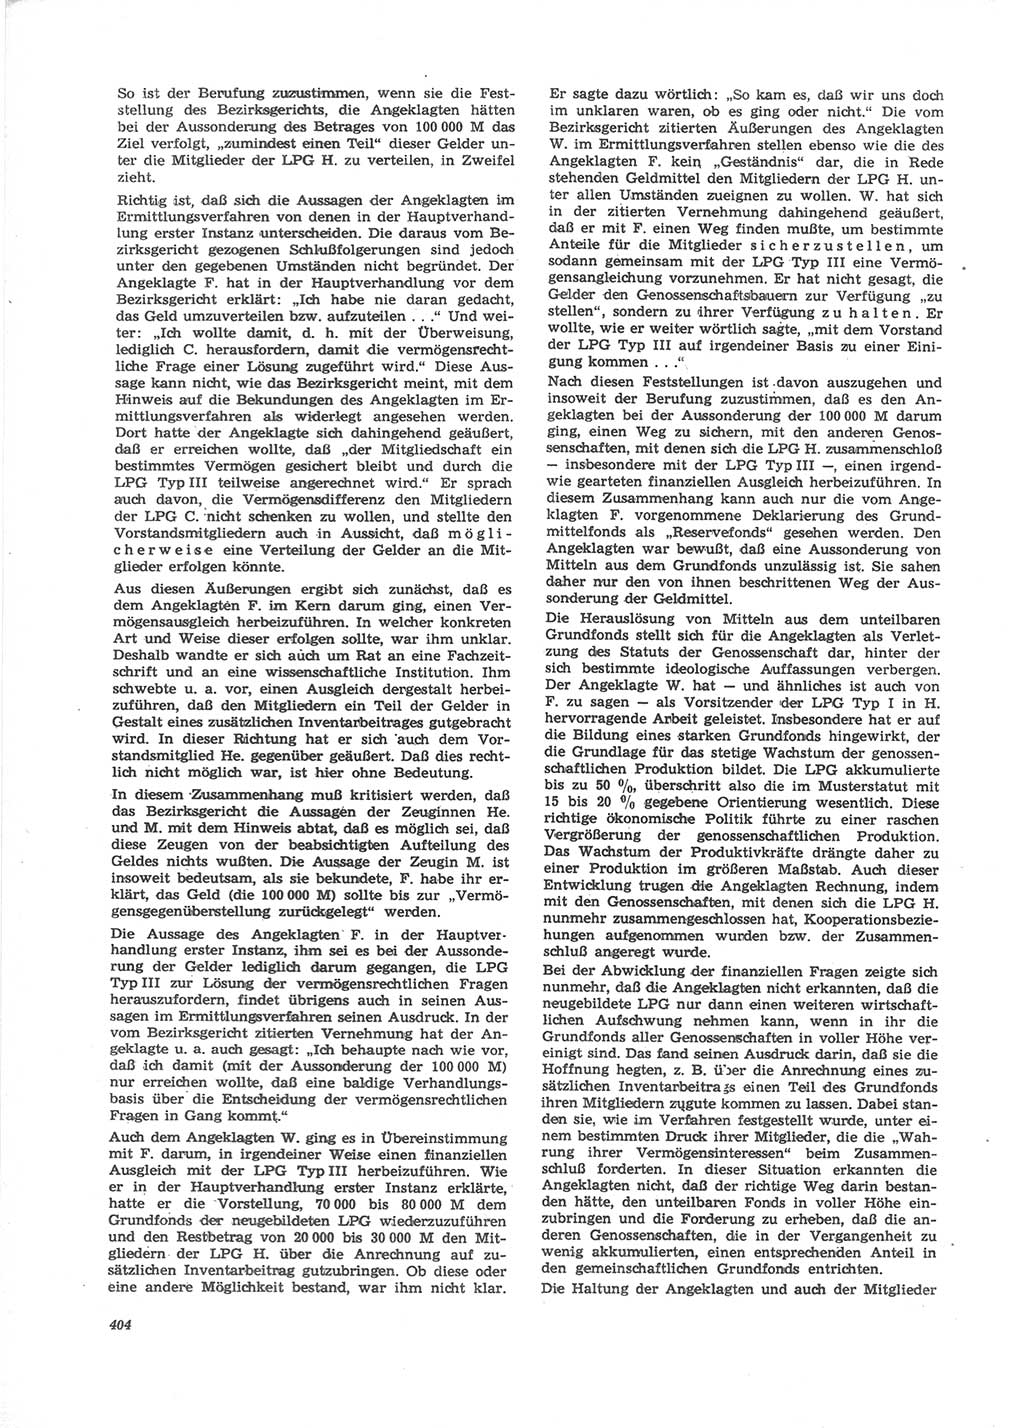 Neue Justiz (NJ), Zeitschrift für Recht und Rechtswissenschaft [Deutsche Demokratische Republik (DDR)], 24. Jahrgang 1970, Seite 404 (NJ DDR 1970, S. 404)